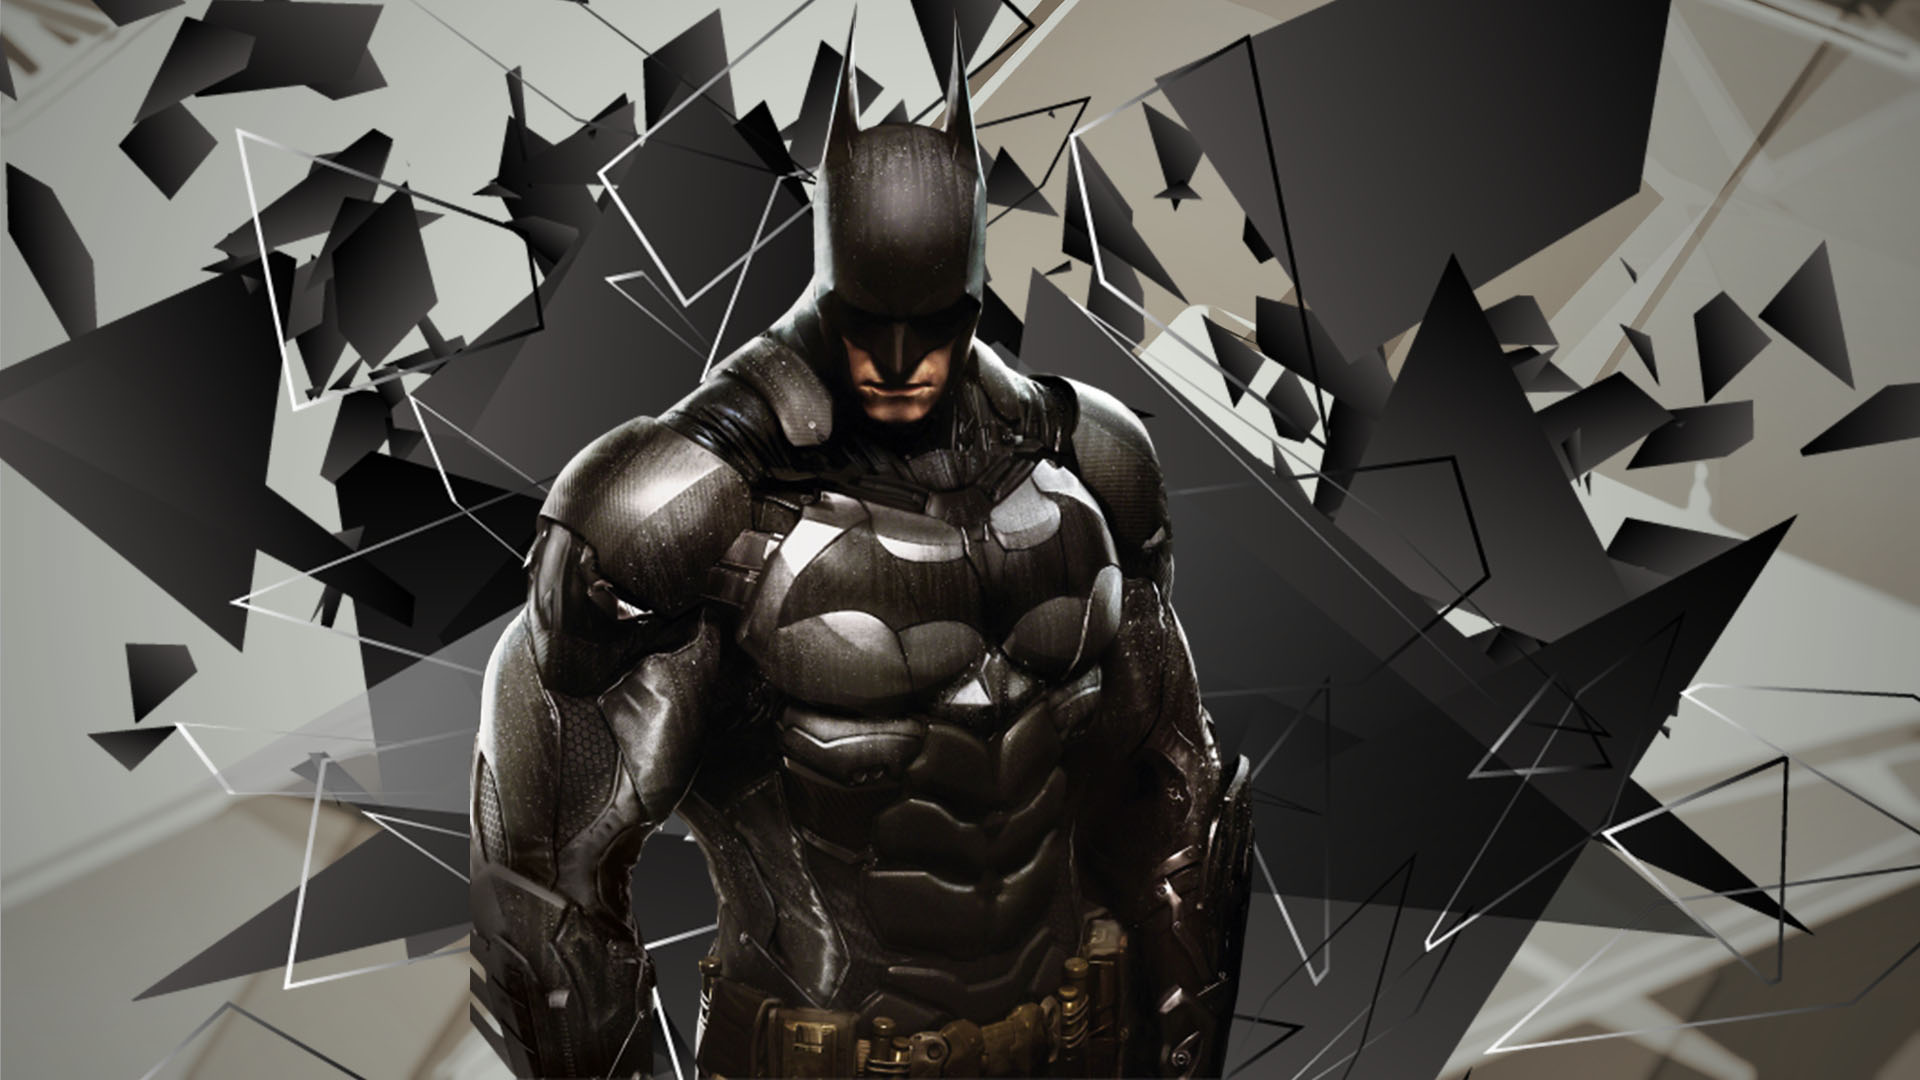 Descarga gratuita de fondo de pantalla para móvil de Películas, The Batman.